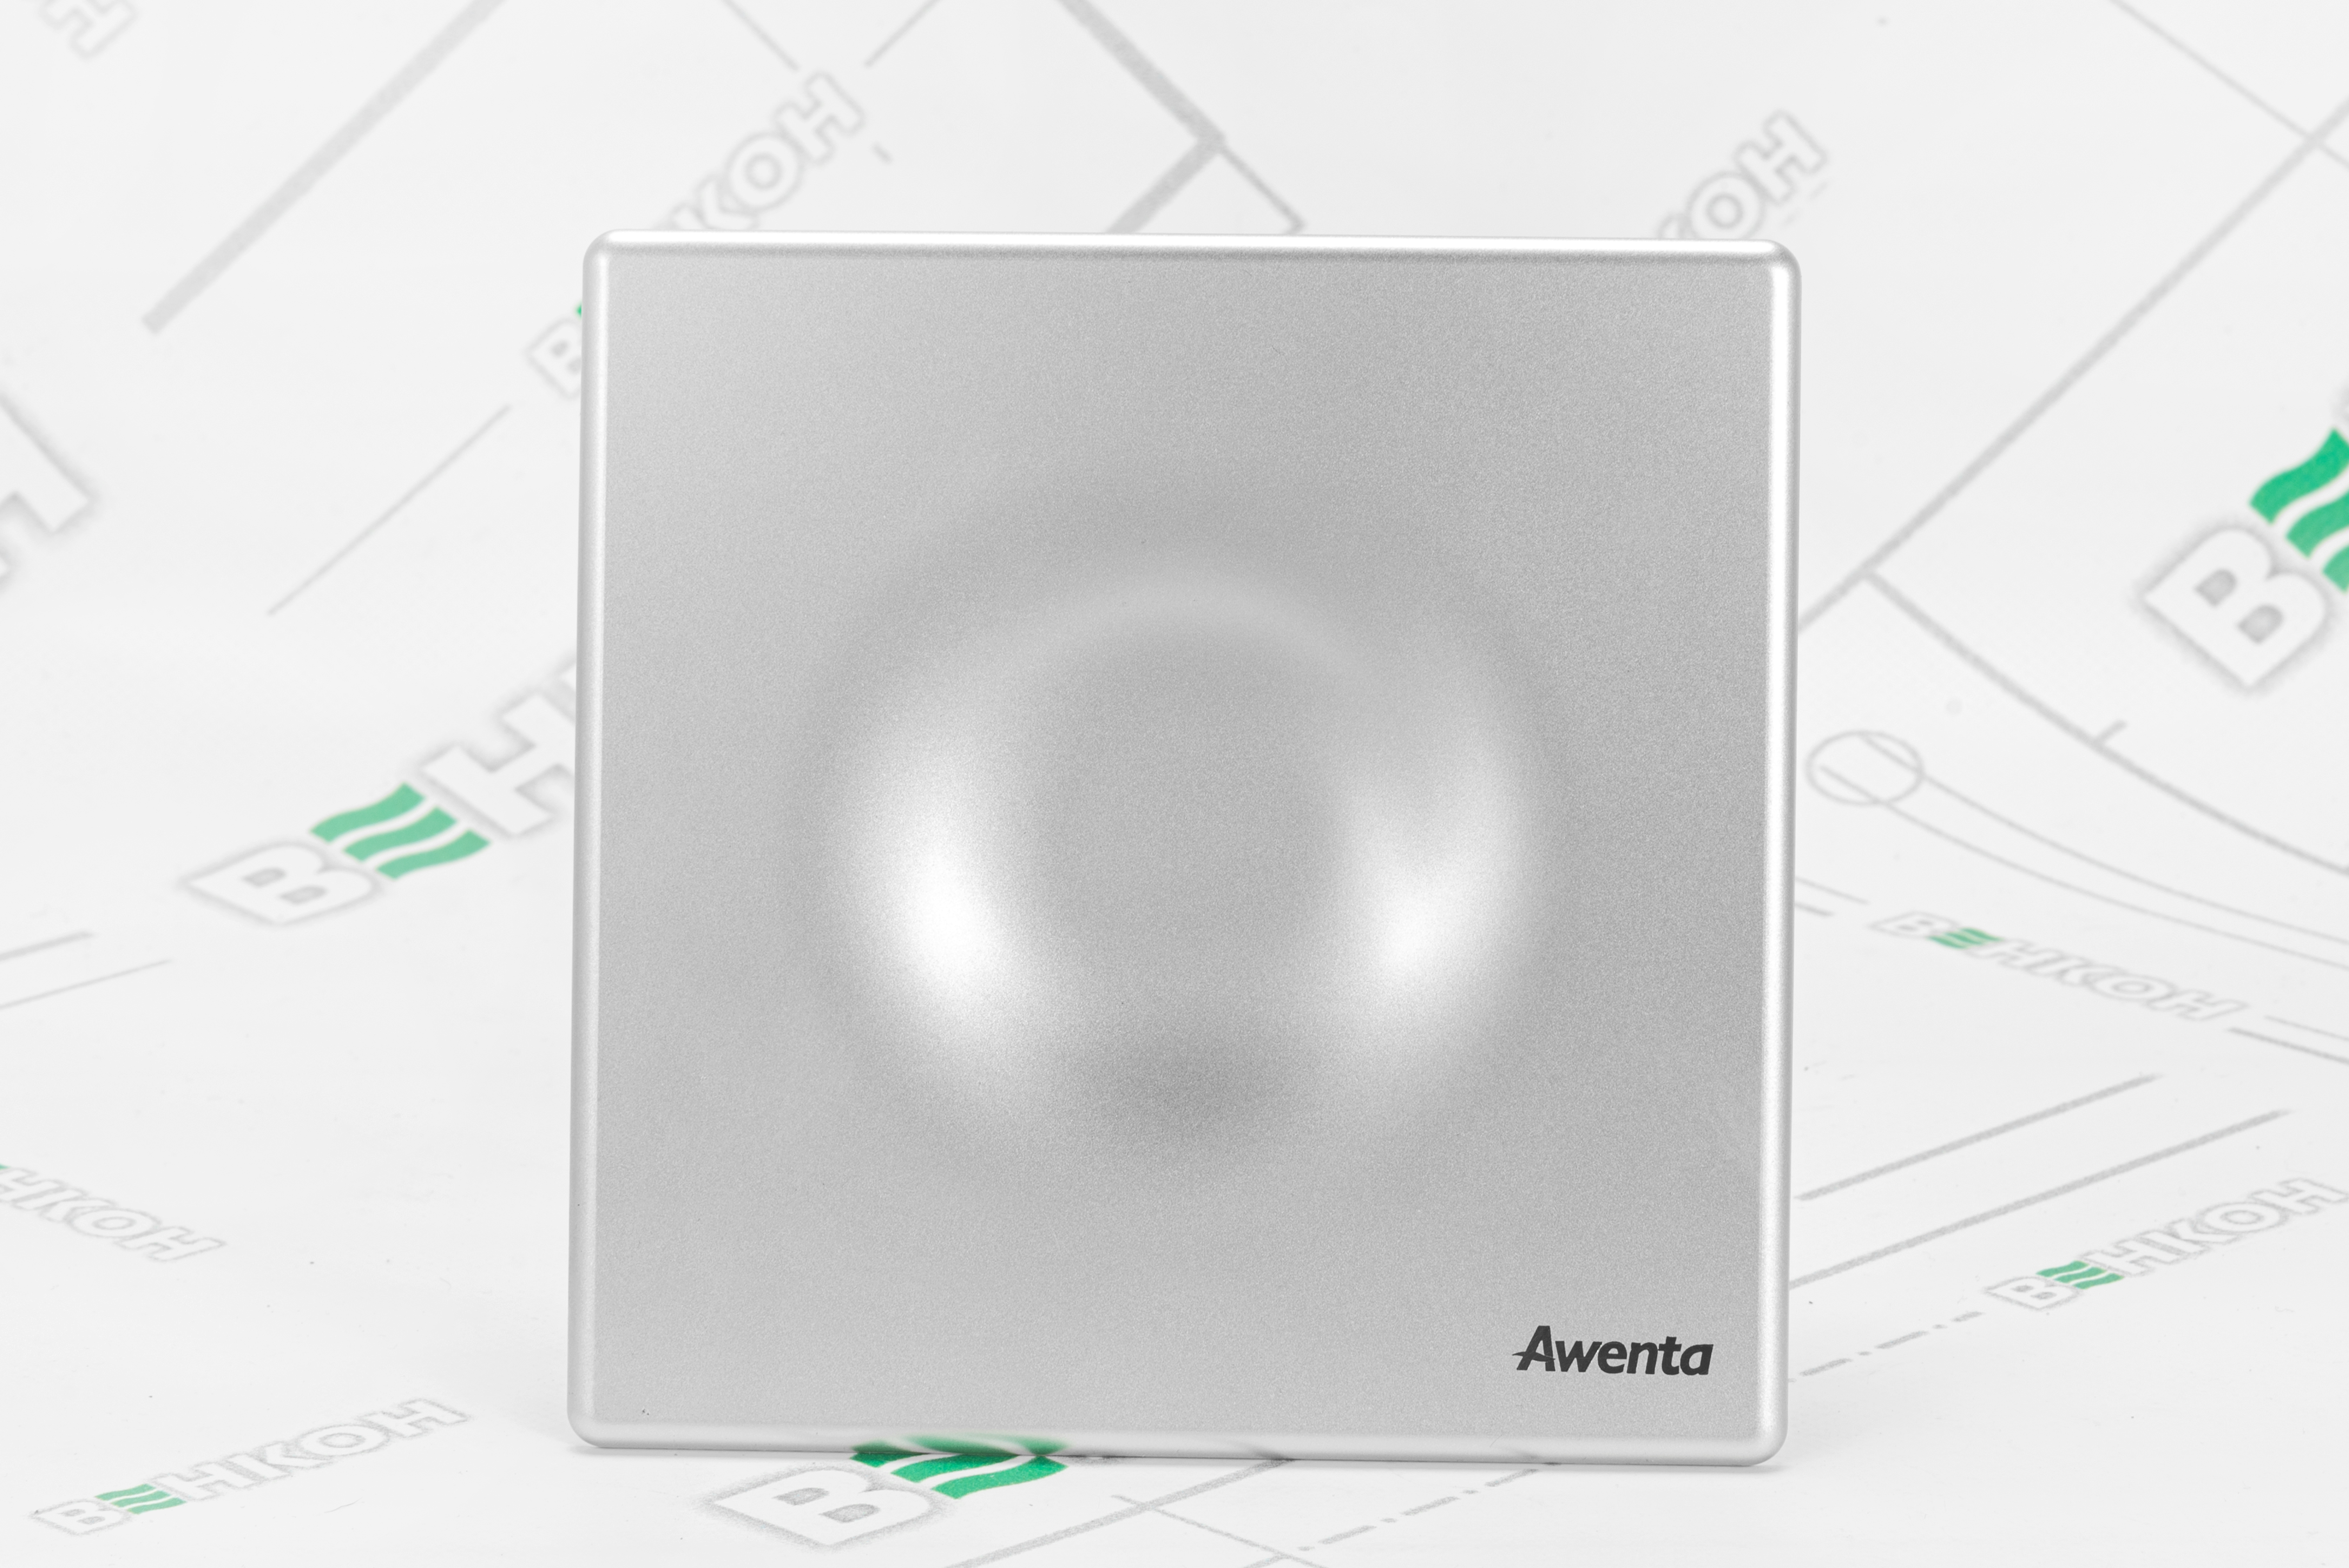 продаємо Awenta System+ Silent KWS100-POS100 в Україні - фото 4